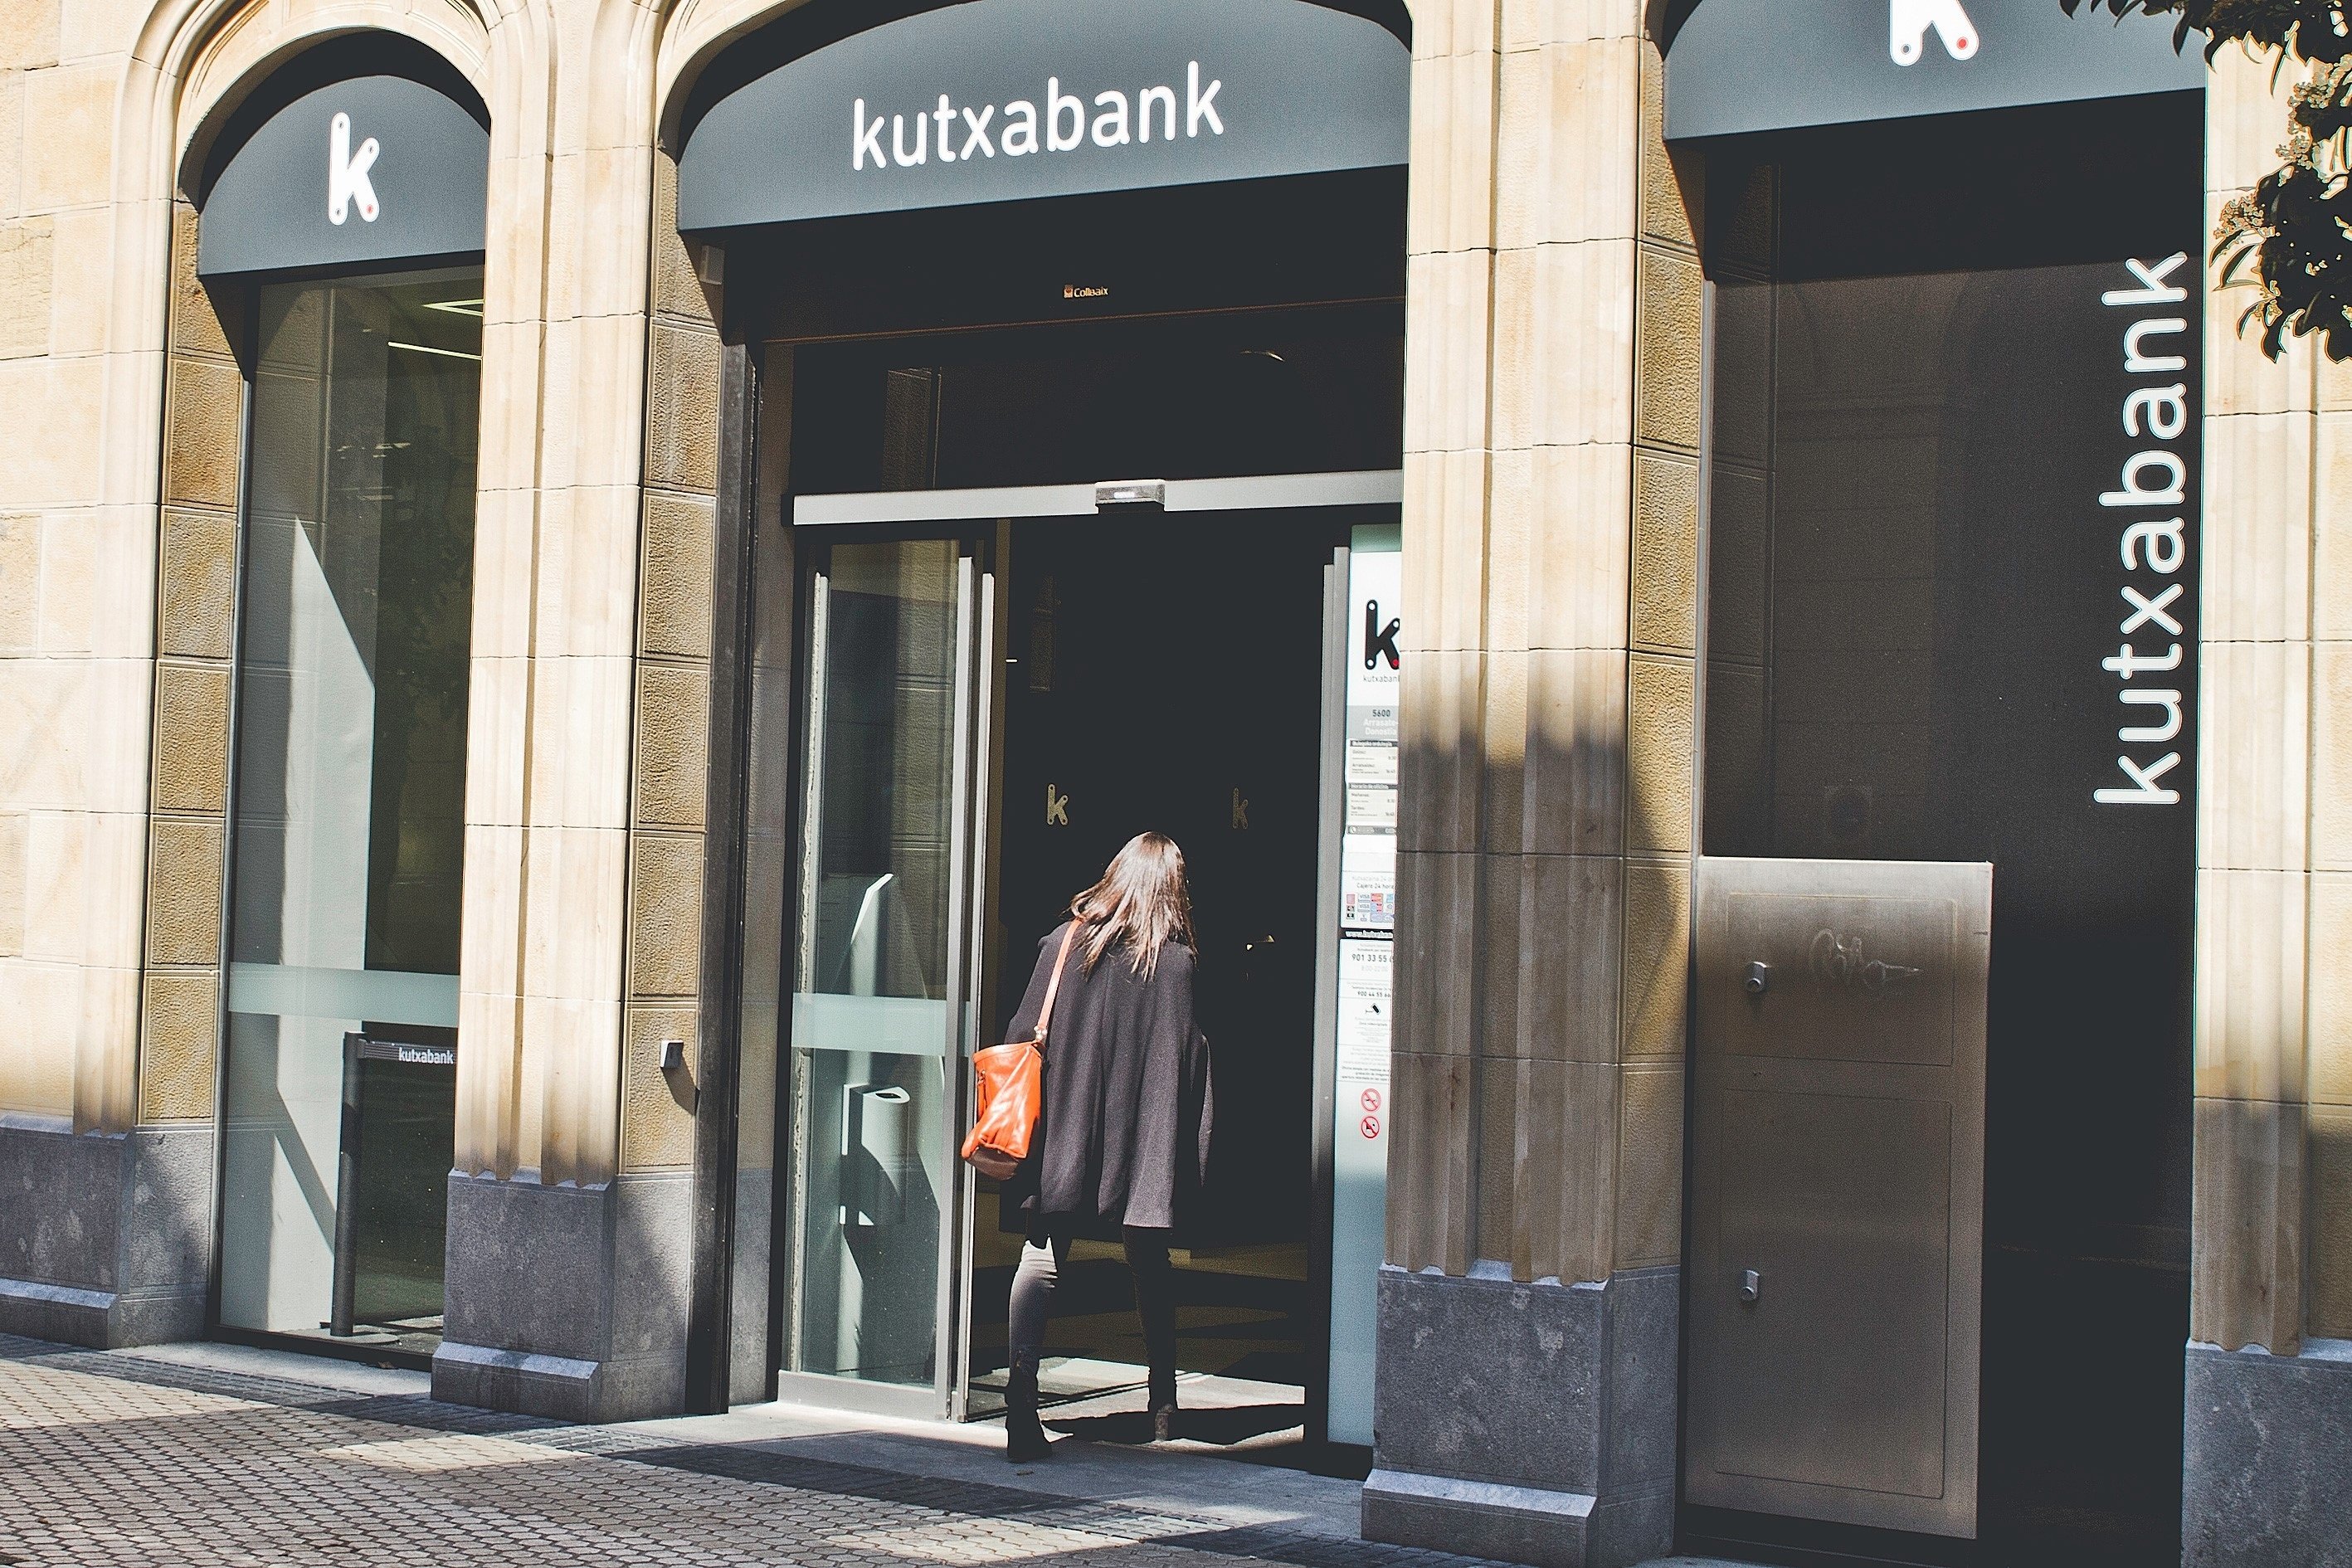 Kutxabank sube el salario a su plantilla, la más joven superará los 31.000 euros